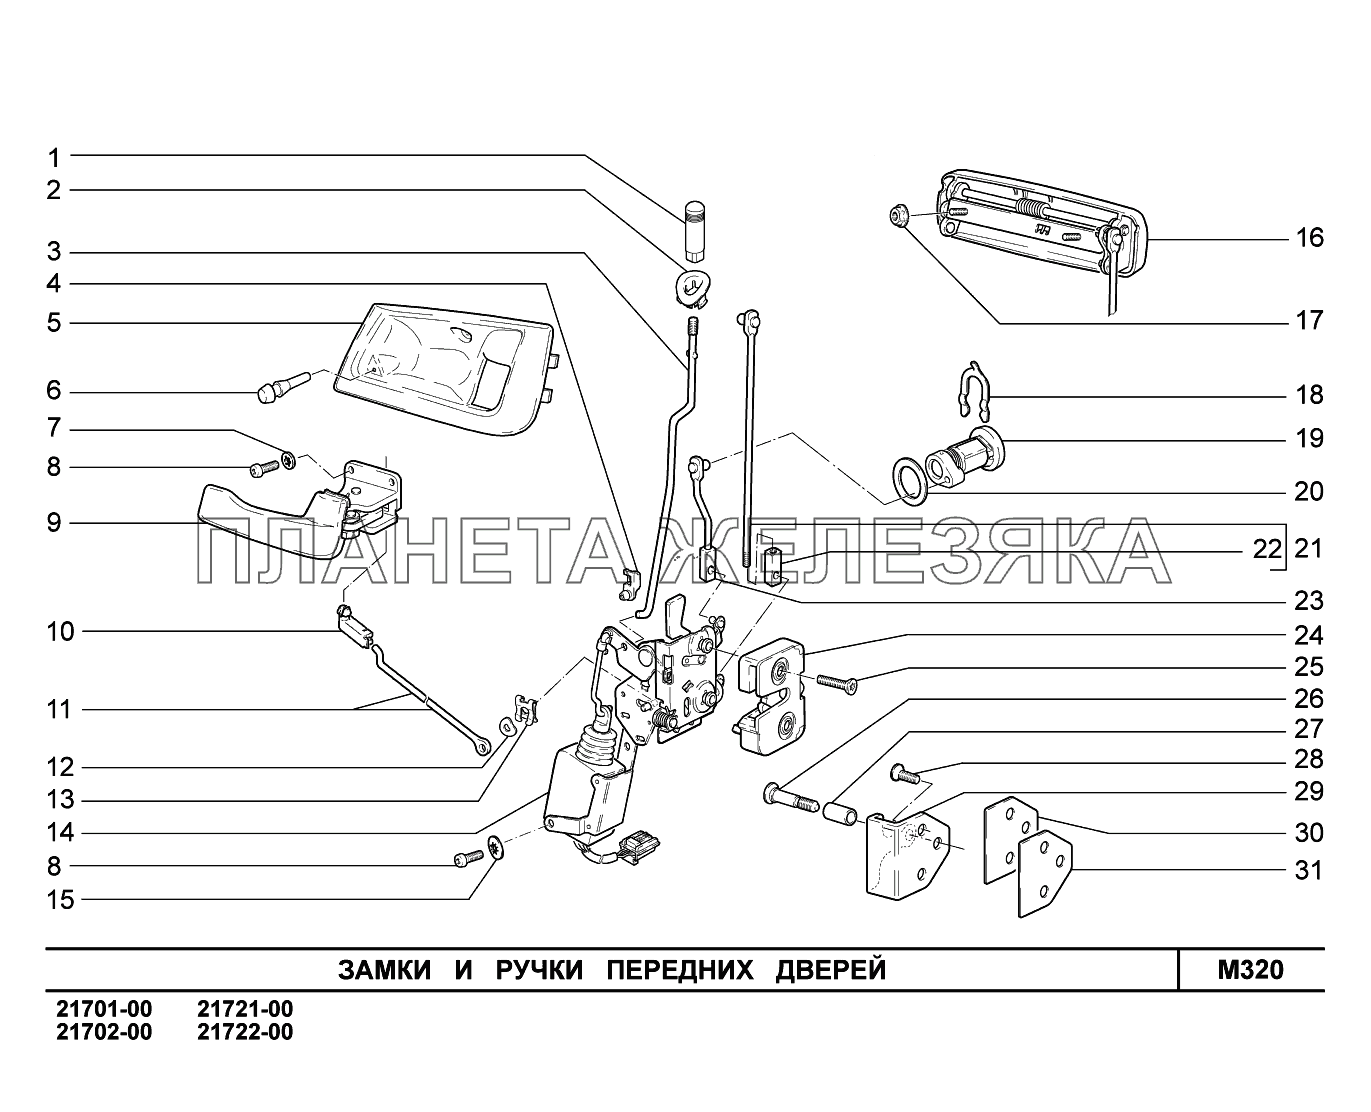 M320. Замки и ручки передних дверей ВАЗ-2170 